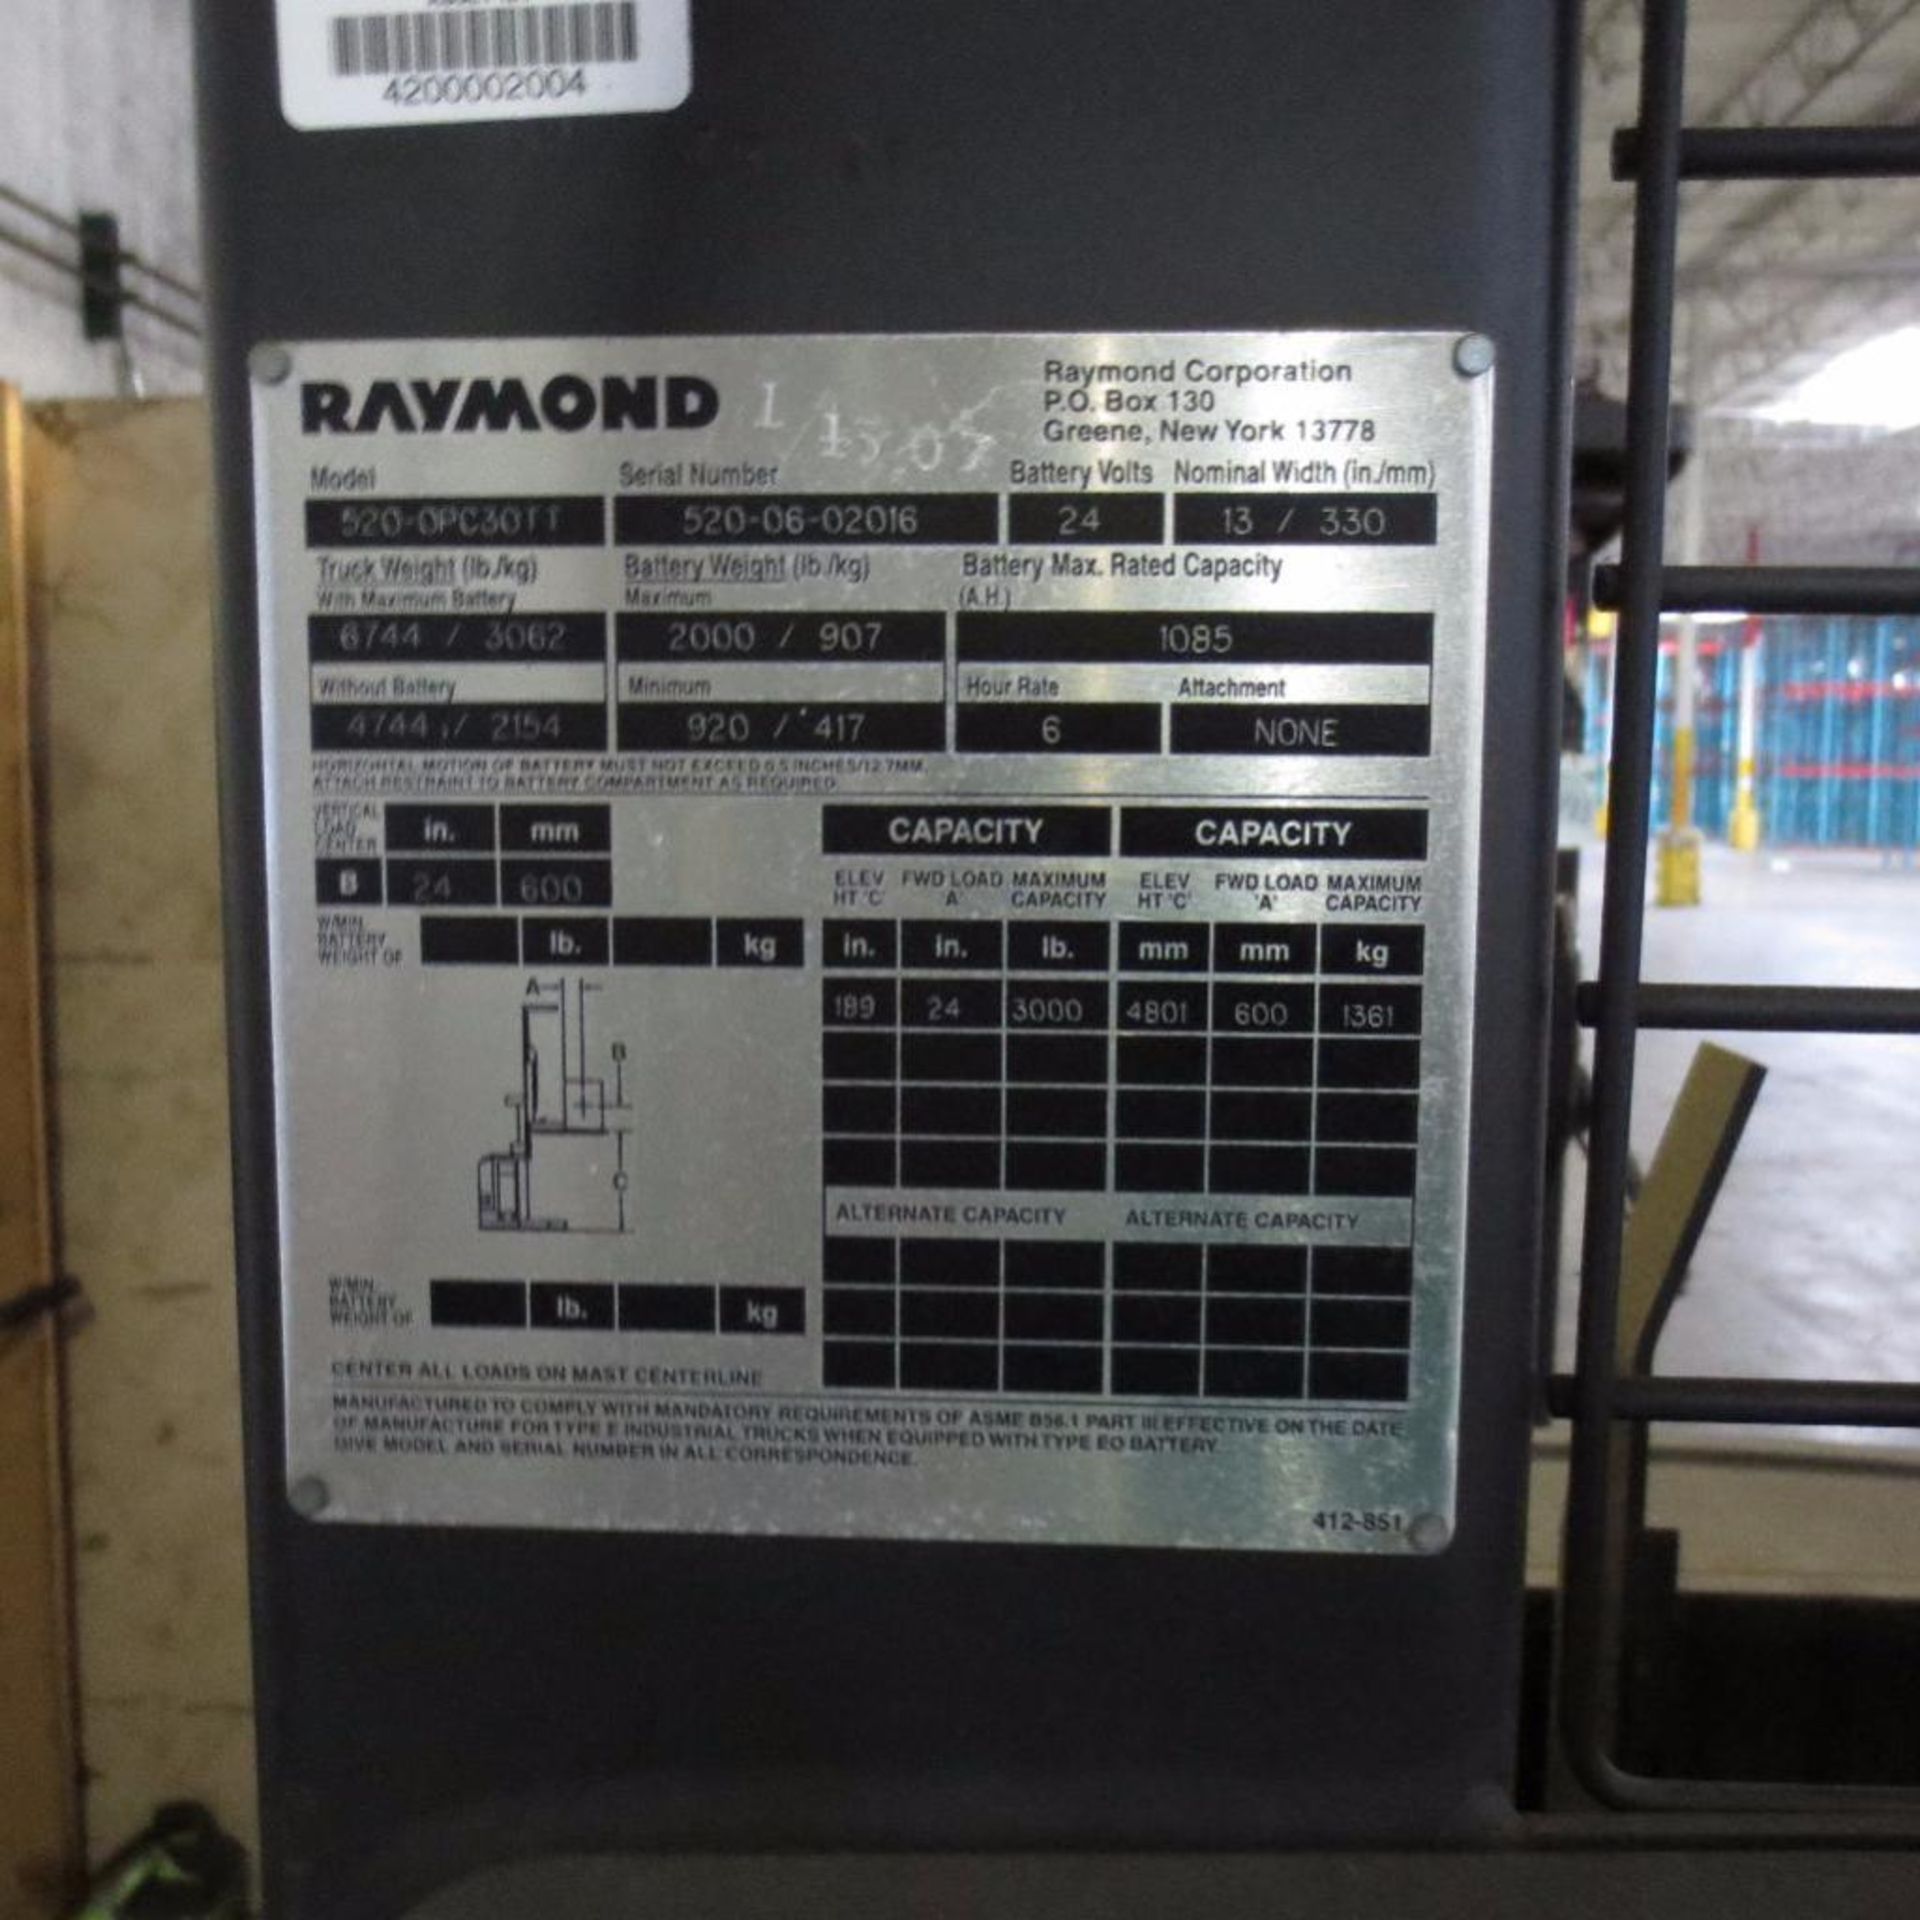 Raymond 3000 LB Cap. Order Picker, 24 Volt, Model 520-0PC30TT, Loc in Repair Area - Image 3 of 3